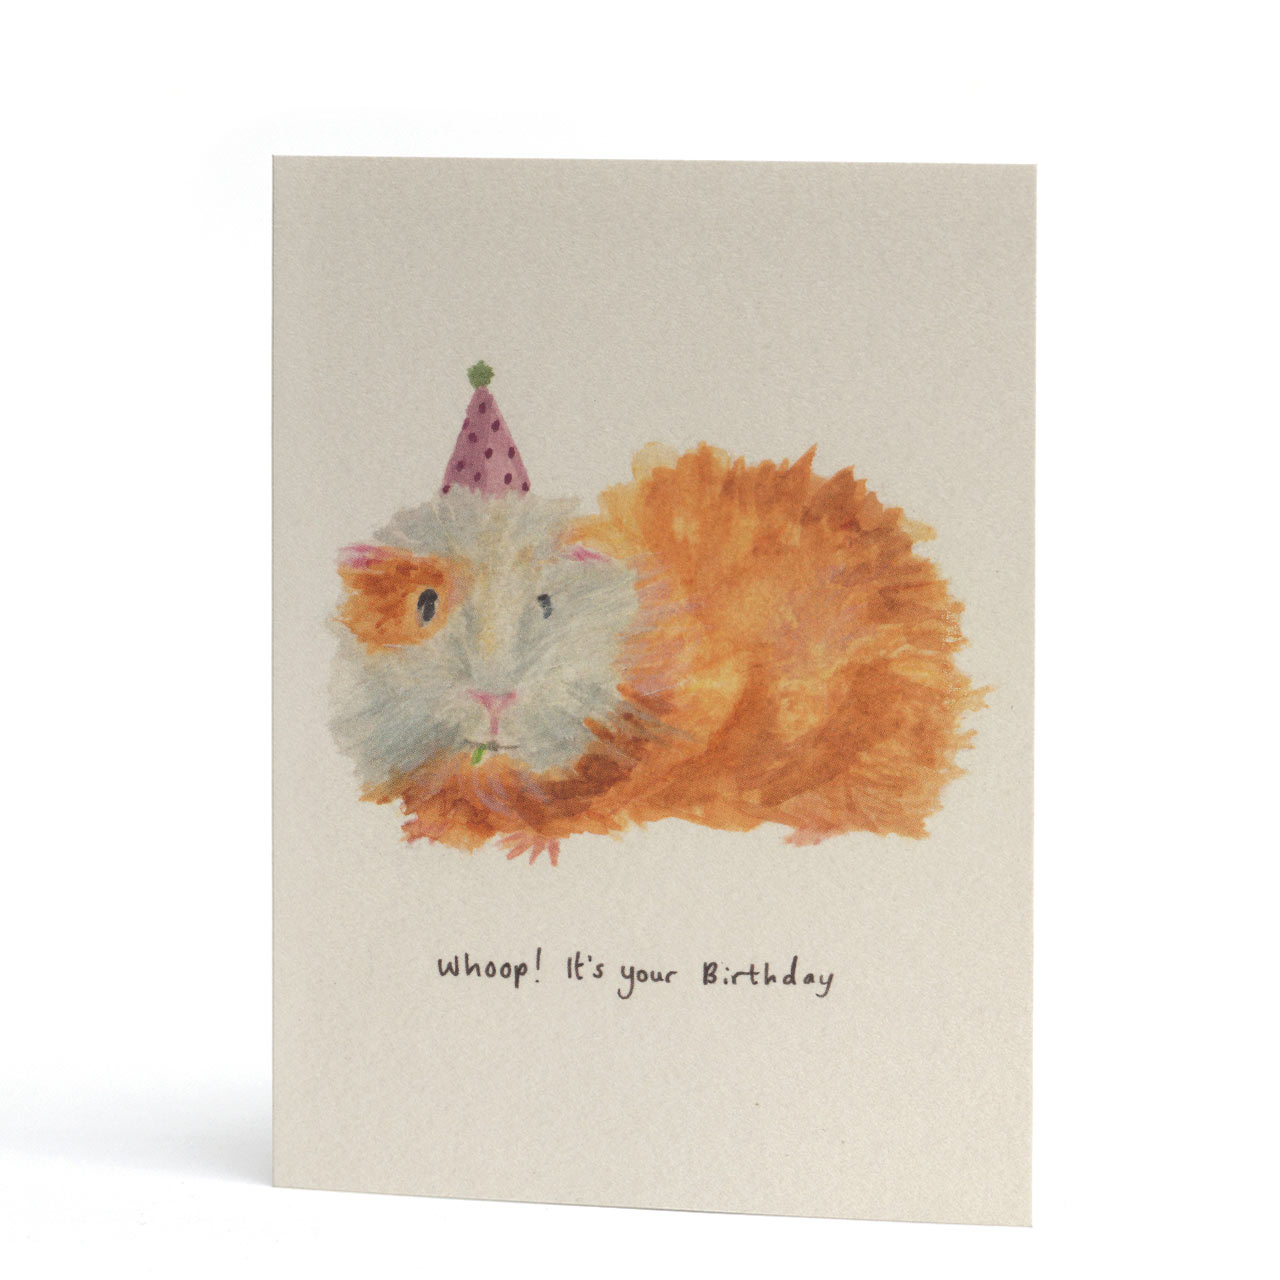 Whoop Birthday Guinea Pig Greeting Card